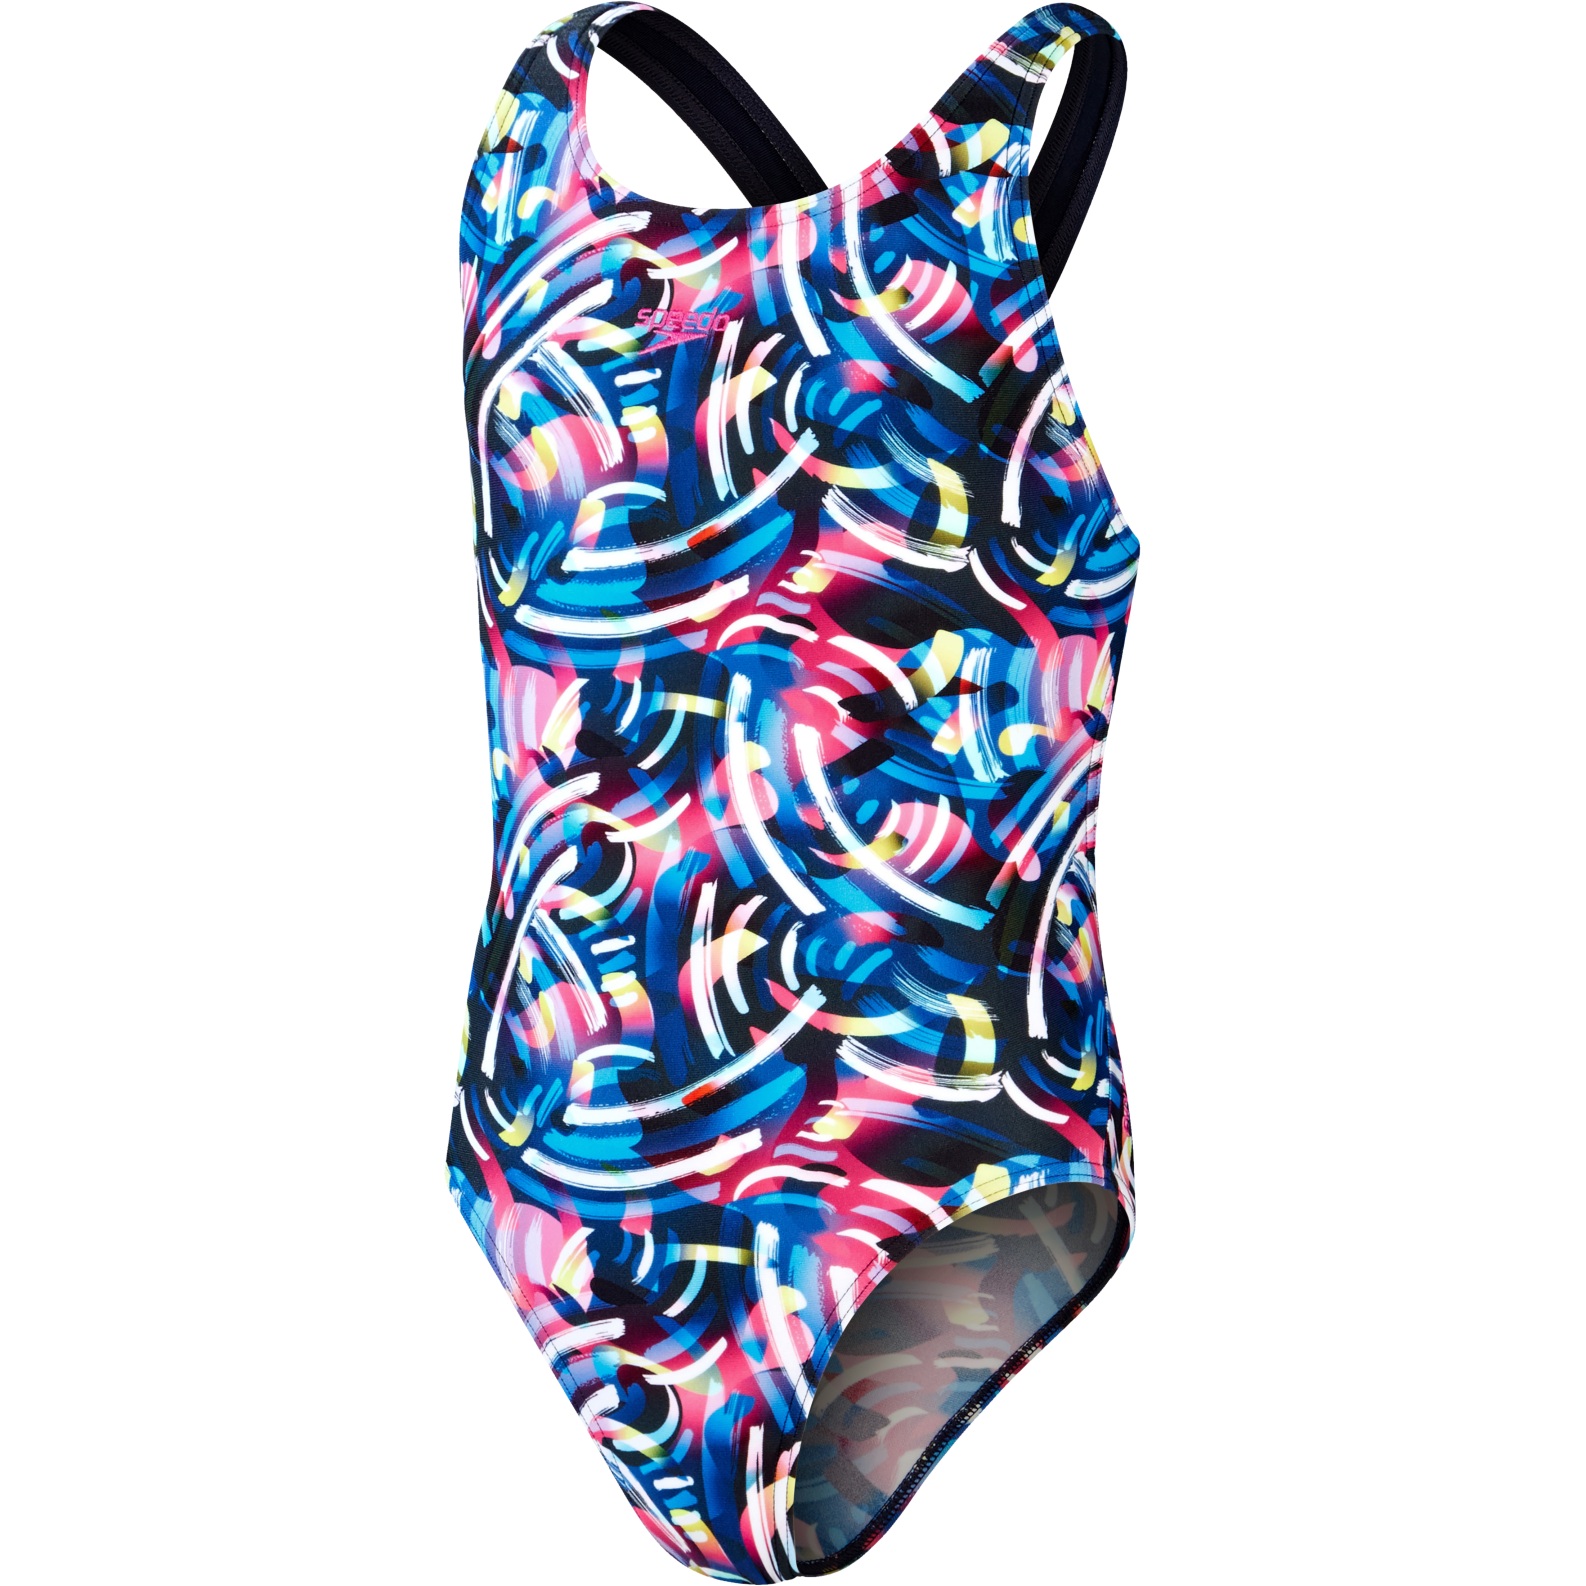 Produktbild von Speedo Digital Allover Leaderback Badeanzug Mädchen - true navy/black/blue flame blue/rose violet/bright yellow